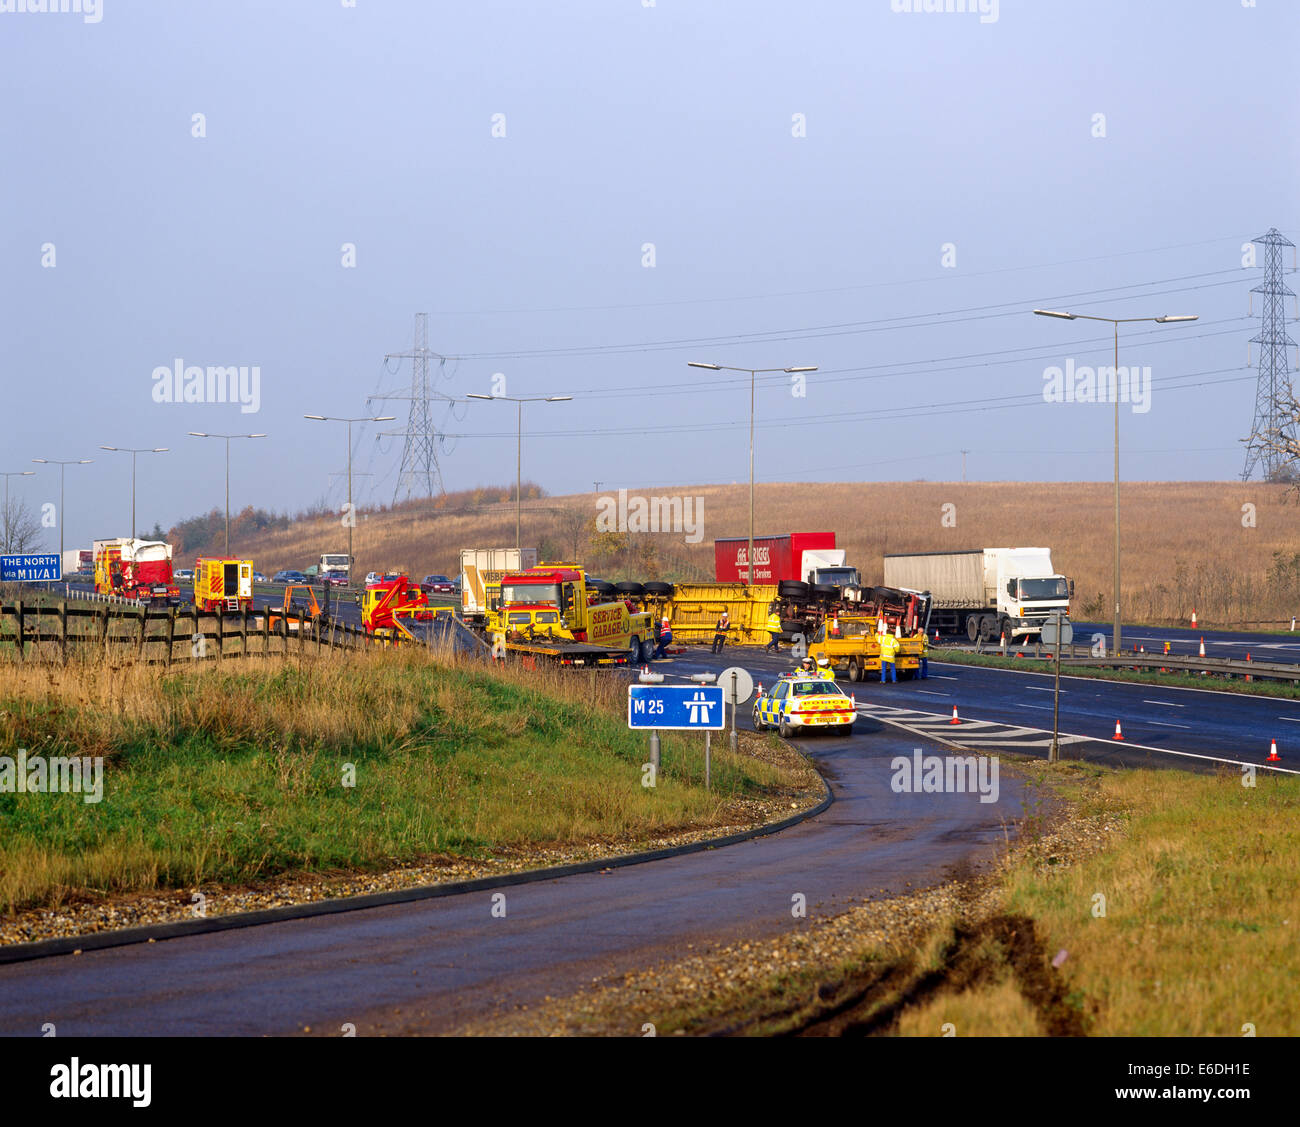 LKW Unfall m25 in der Nähe von Junction 27 Essex UK Stockfoto